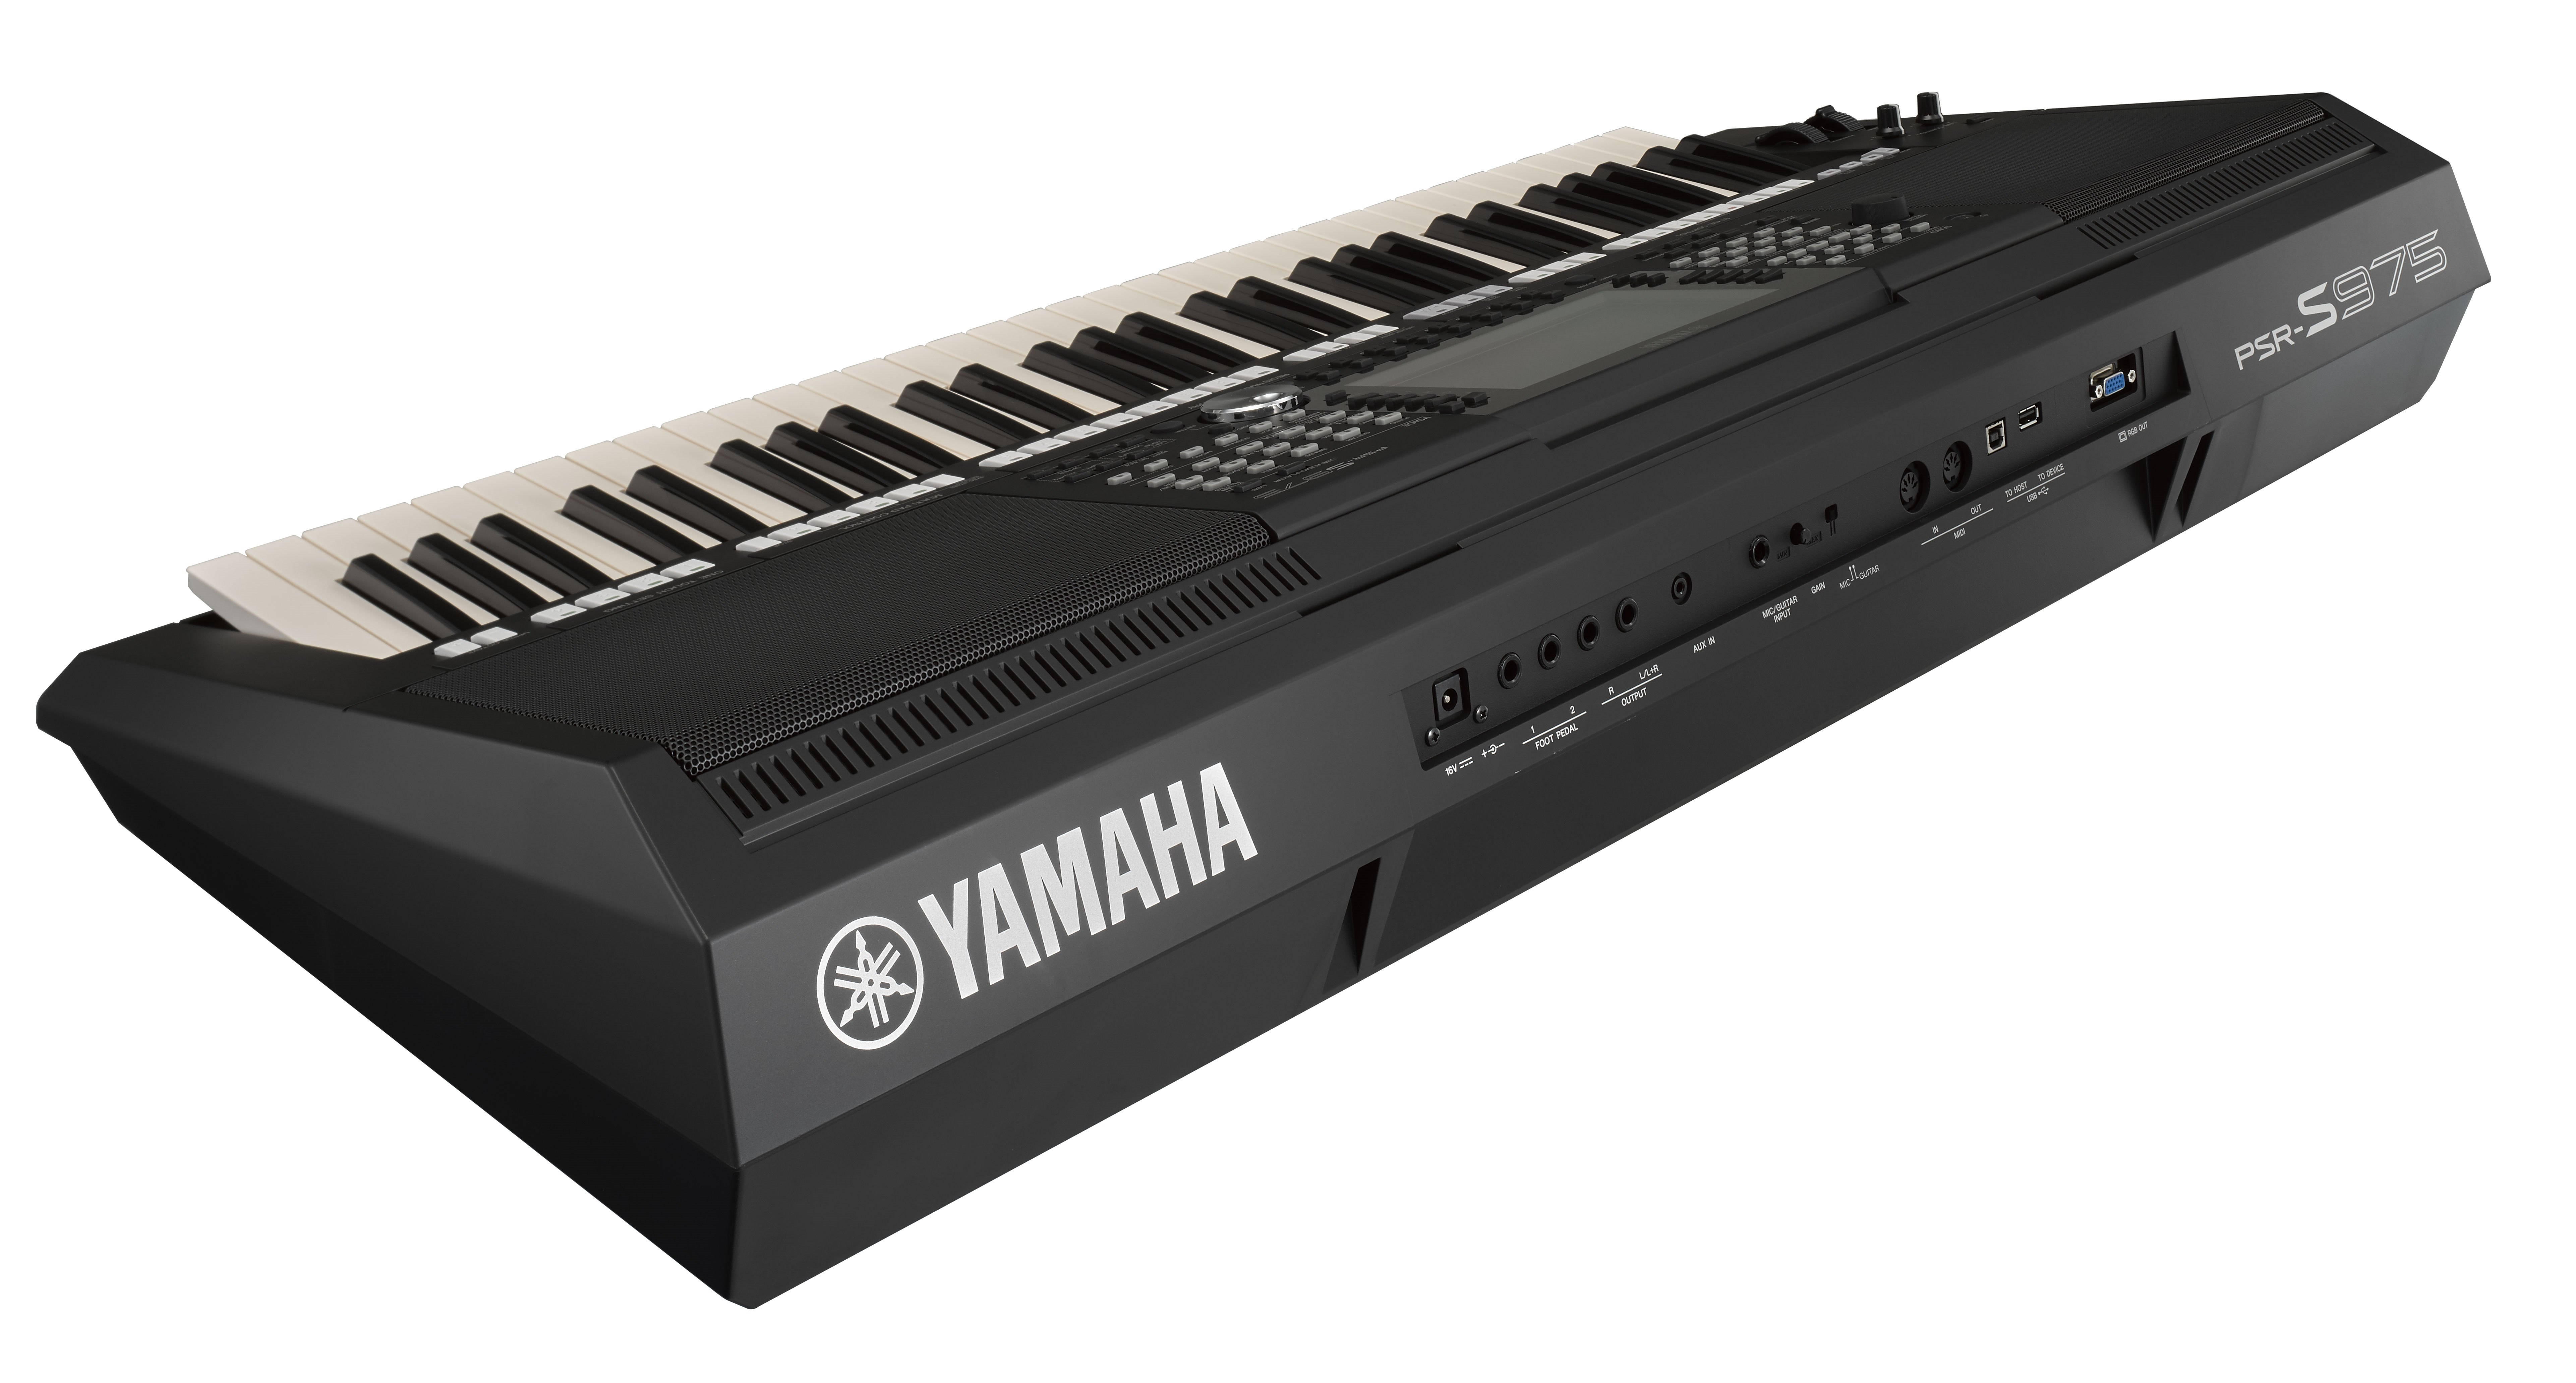  Yamaha  Keyboards  Wallpapers  Wallpaper  Cave